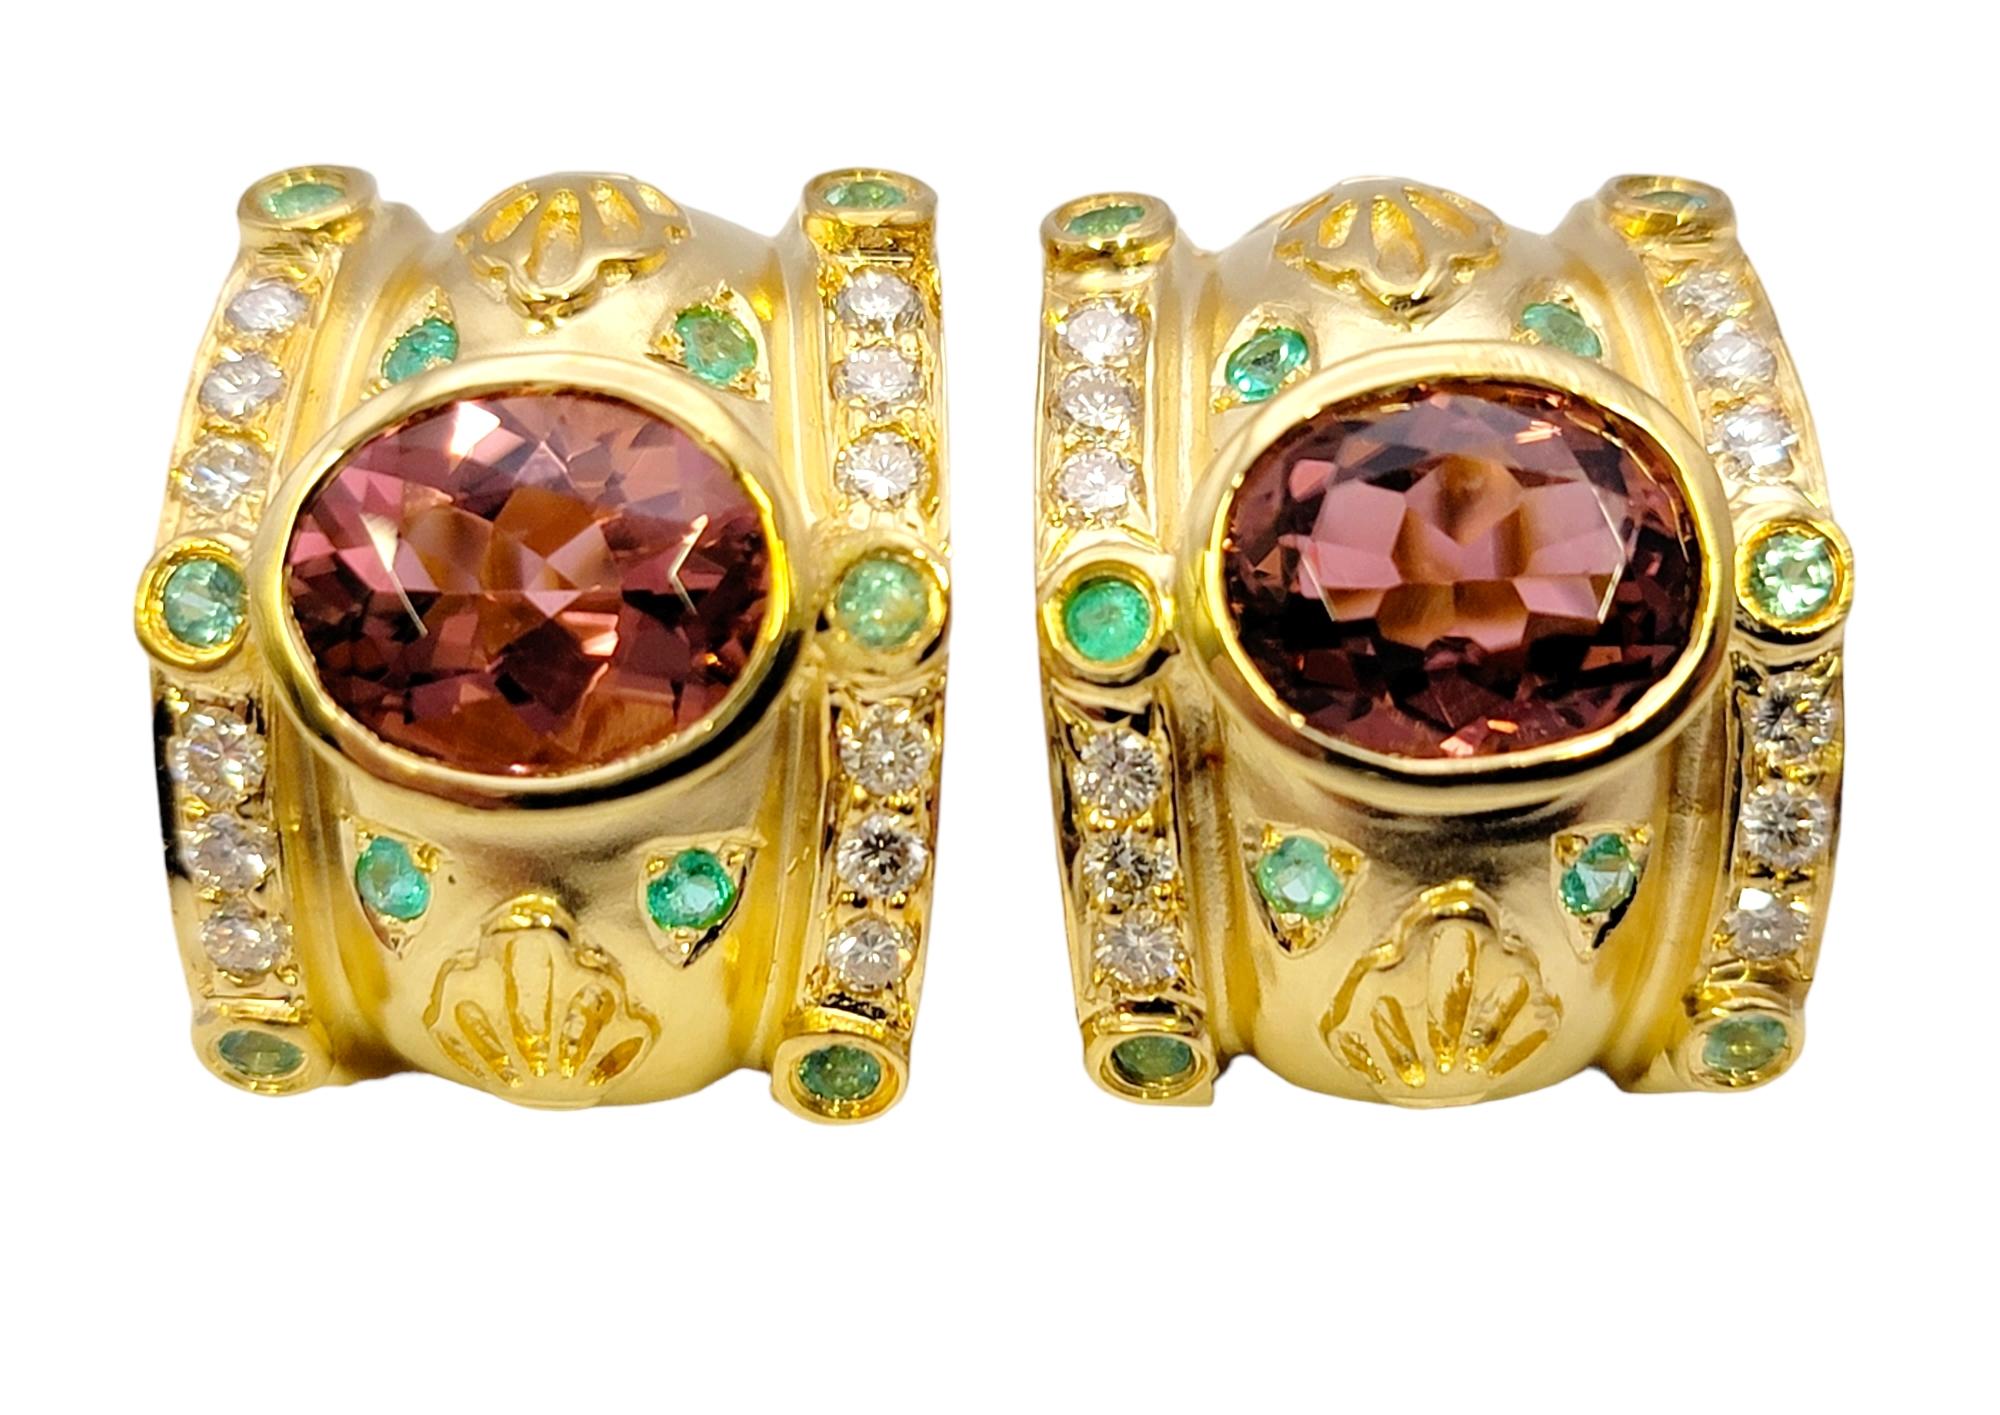 Wunderschöne halbe Ohrringe im etruskischen Stil mit lebhaften Turmalin-Edelsteinen und Diamanten. Diese atemberaubenden, verschnörkelten Ohrringe strotzen nur so vor Farbe und Design. Die unglaublichen rosafarbenen, grünen und weißen Steine,